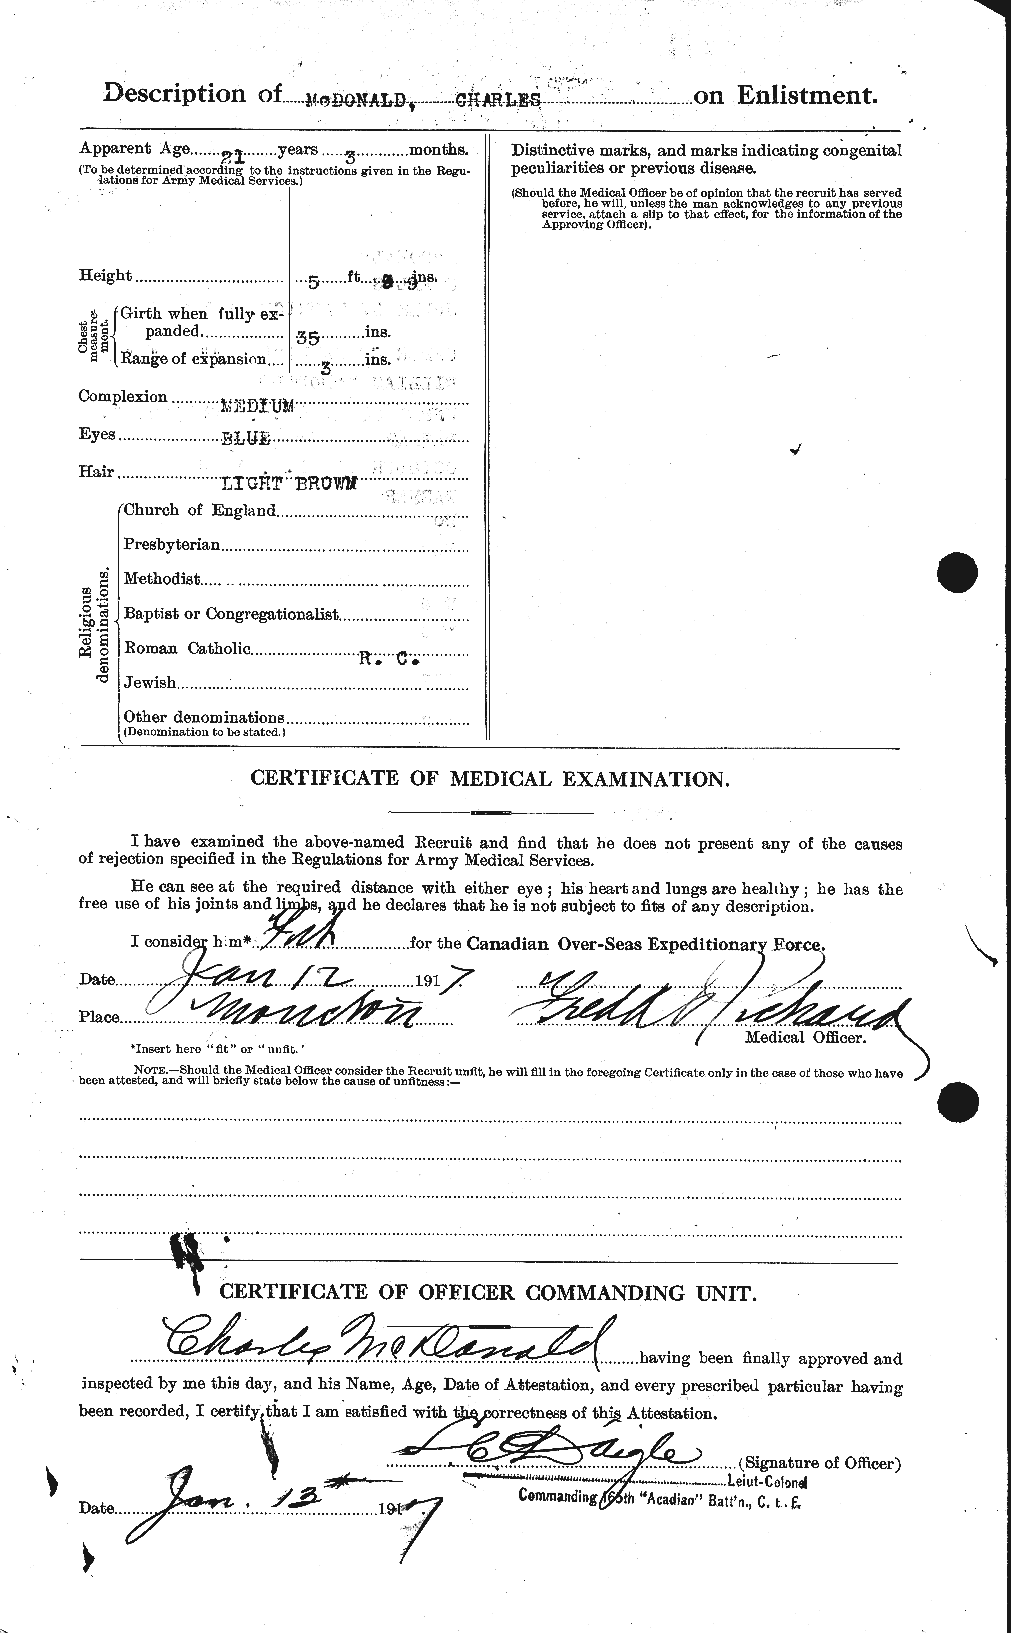 Dossiers du Personnel de la Première Guerre mondiale - CEC 136448b